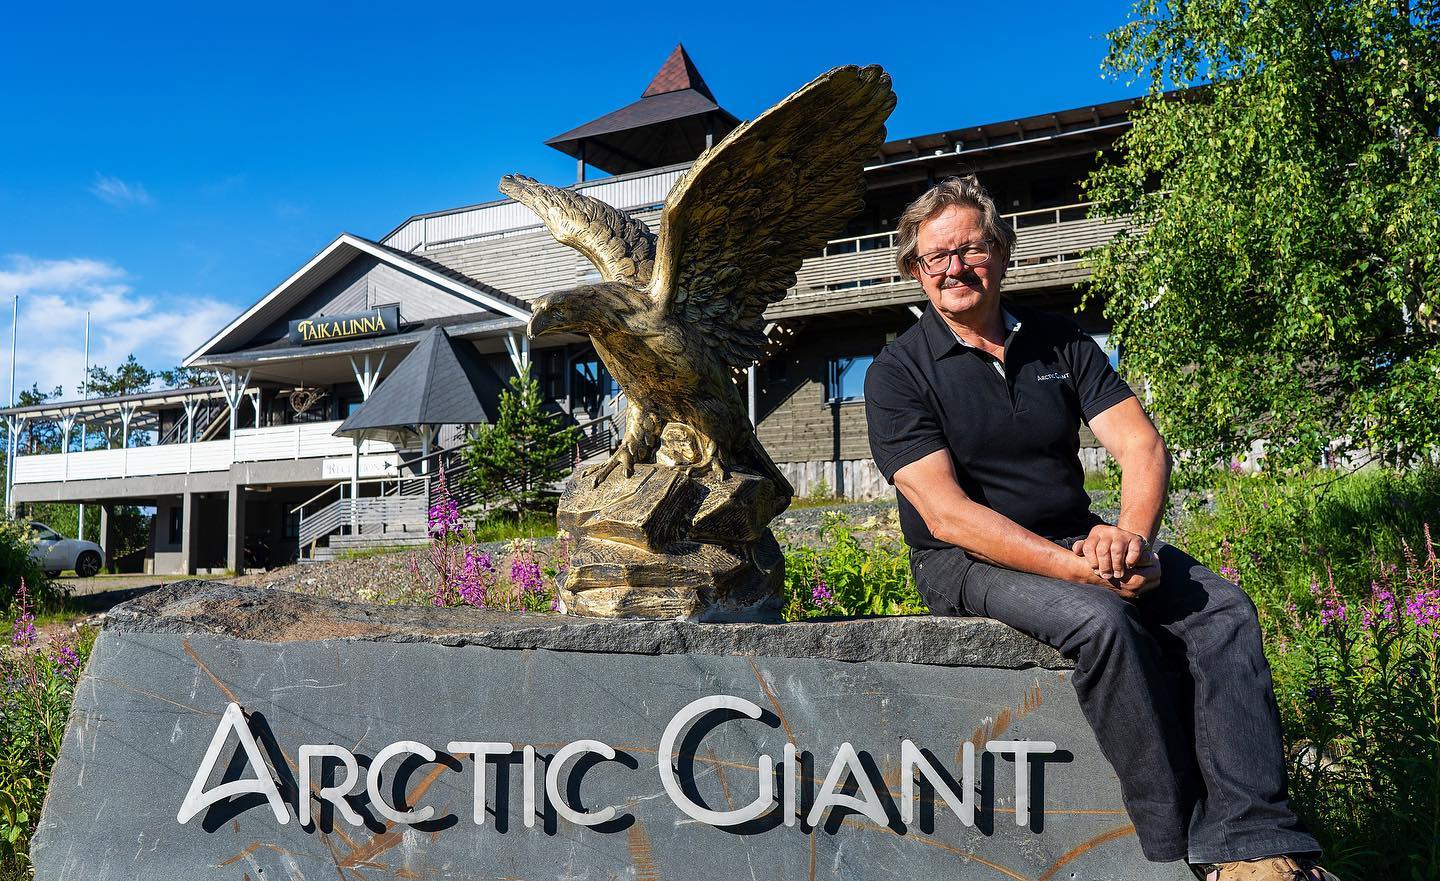 Arctic Giant Birdhouse Hotel